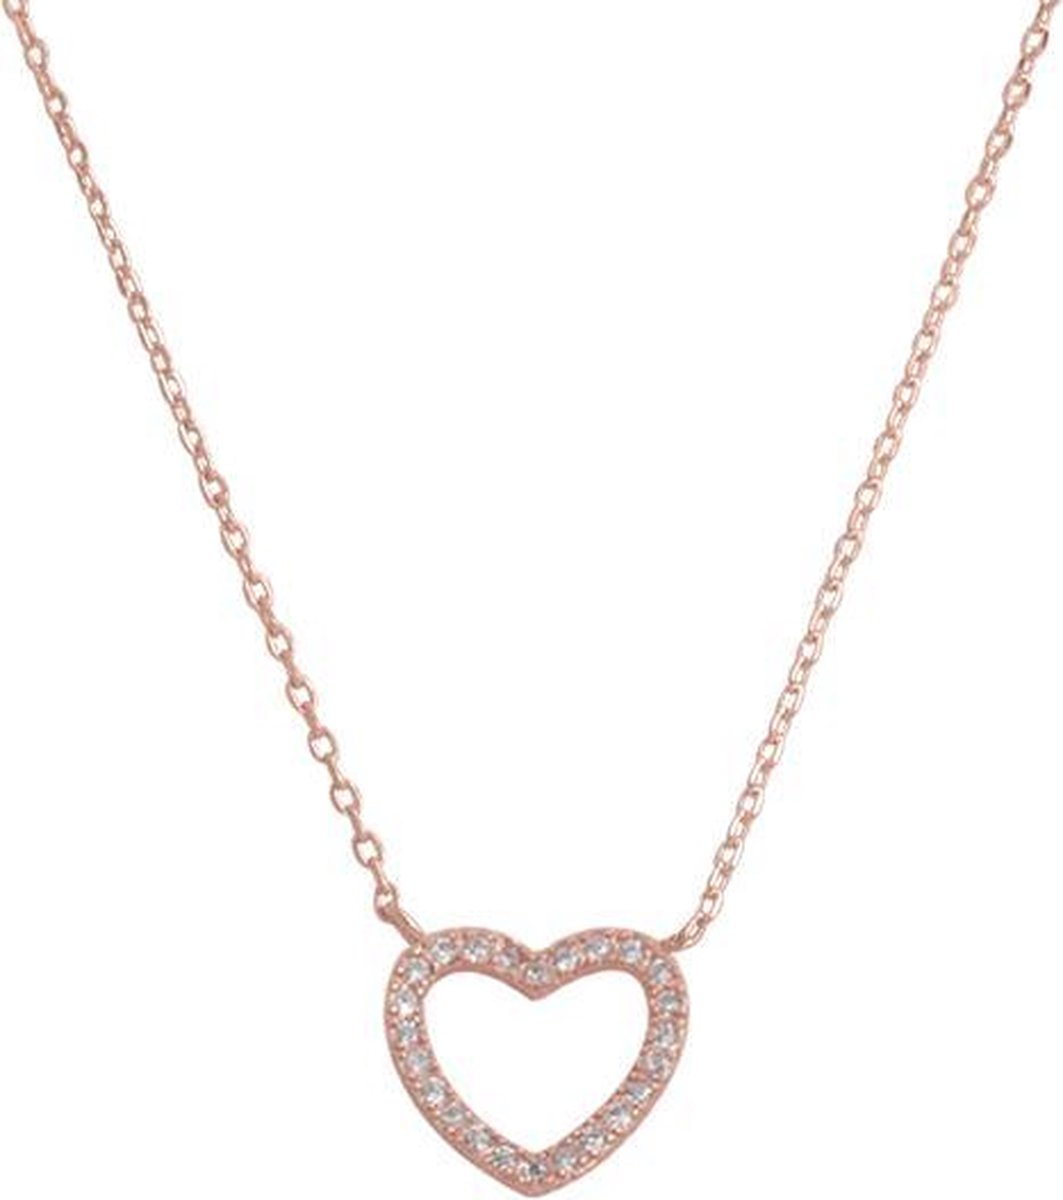 Fate Jewellery Ketting FJ491 - Heart - 925 Zilver - Rosé verguld - Ingelegd met Zirkonia kristallen